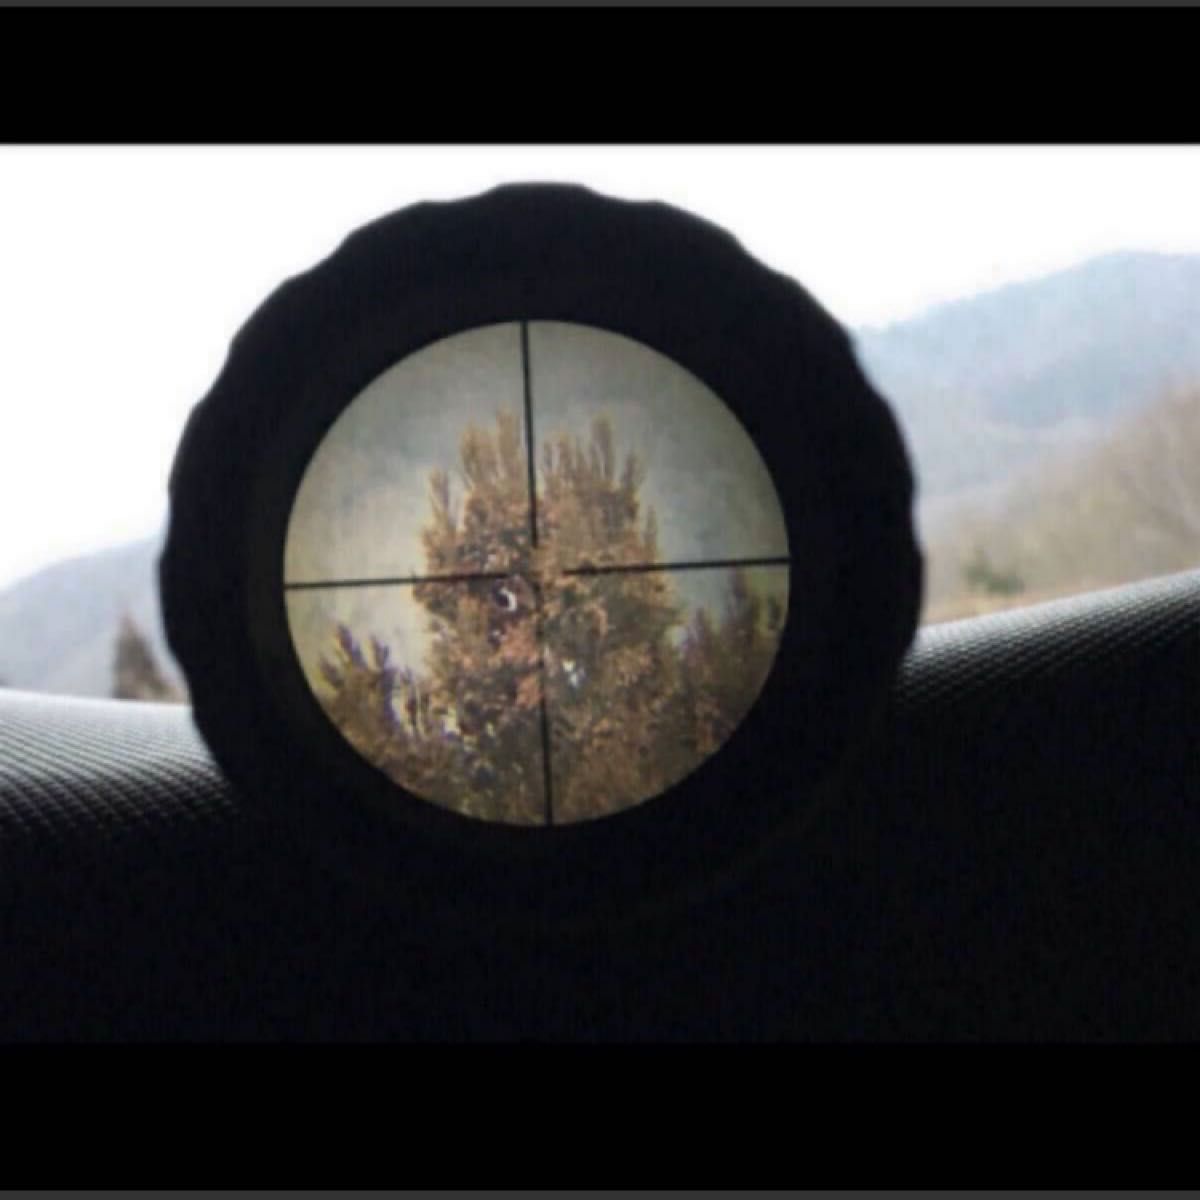 Bushnell ブッシュネル 高倍率 AR Optics 4.5-18x24 ライフルスコープ ベースマウント スナイパー 猟銃